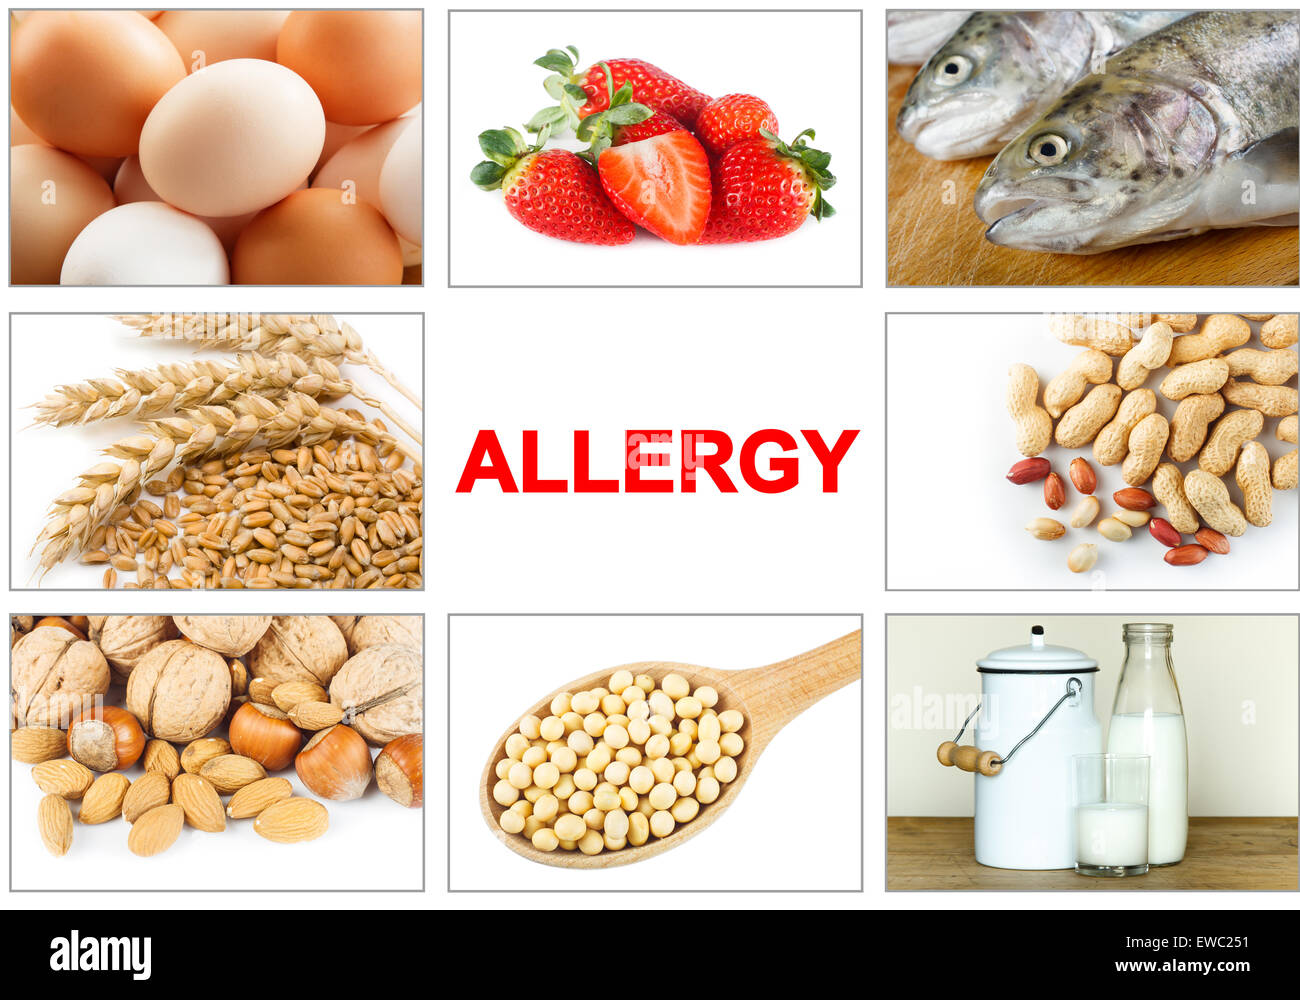 Allergie-Food-Konzept. Nahrungsmittelallergene wie Eiern, Milch, Obst, Baumnüsse, Erdnüsse, Soja, Weizen und Fisch. Text "Allergie" leicht zu entfernen Stockfoto